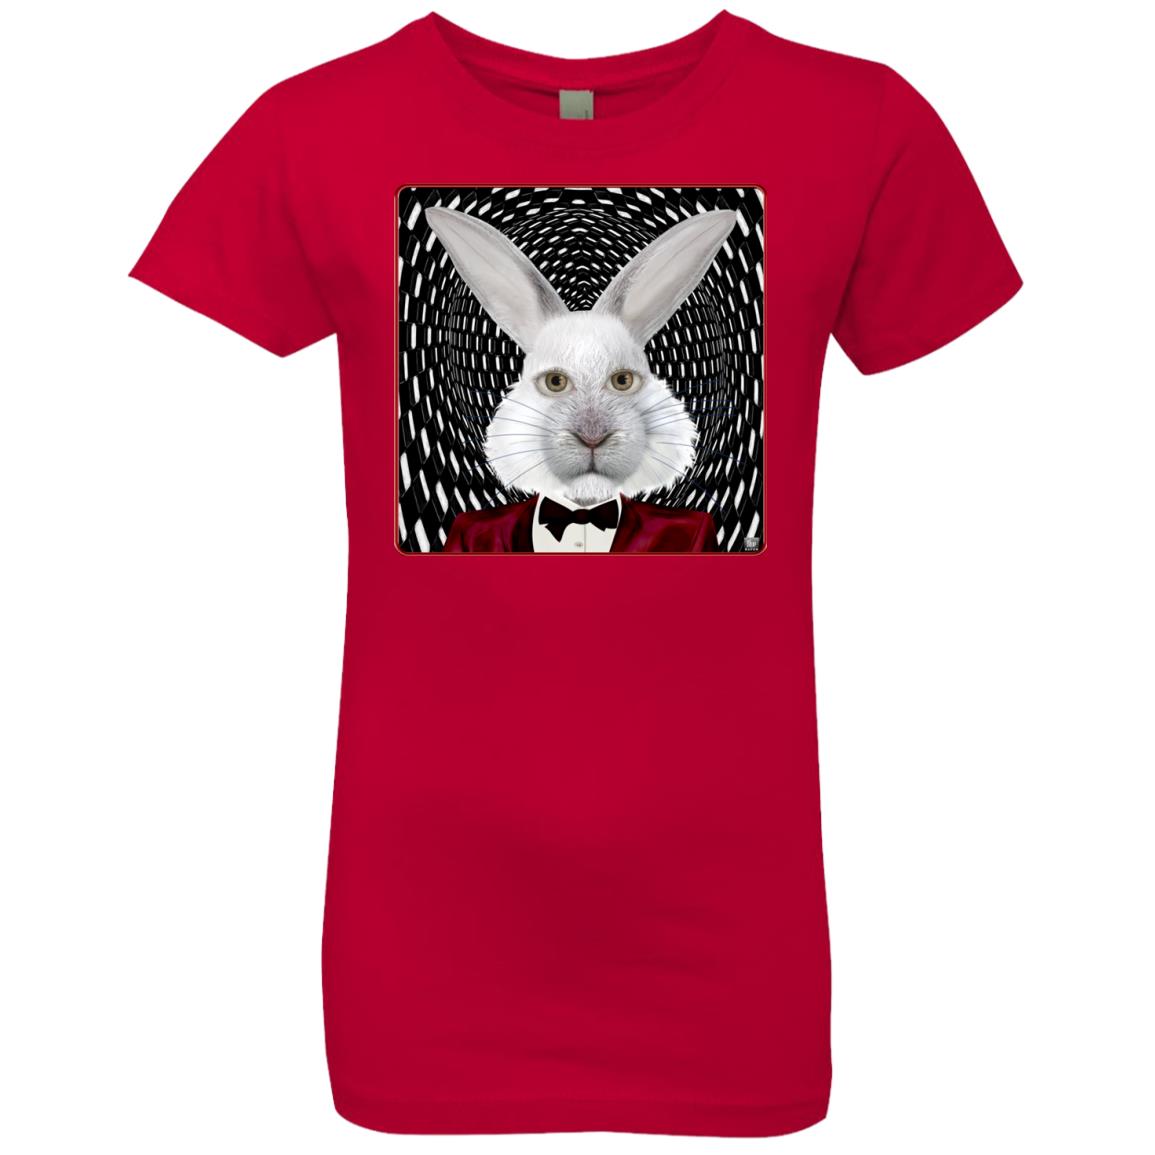 the white rabbit - Girl's Premium Cotton T-Shirt